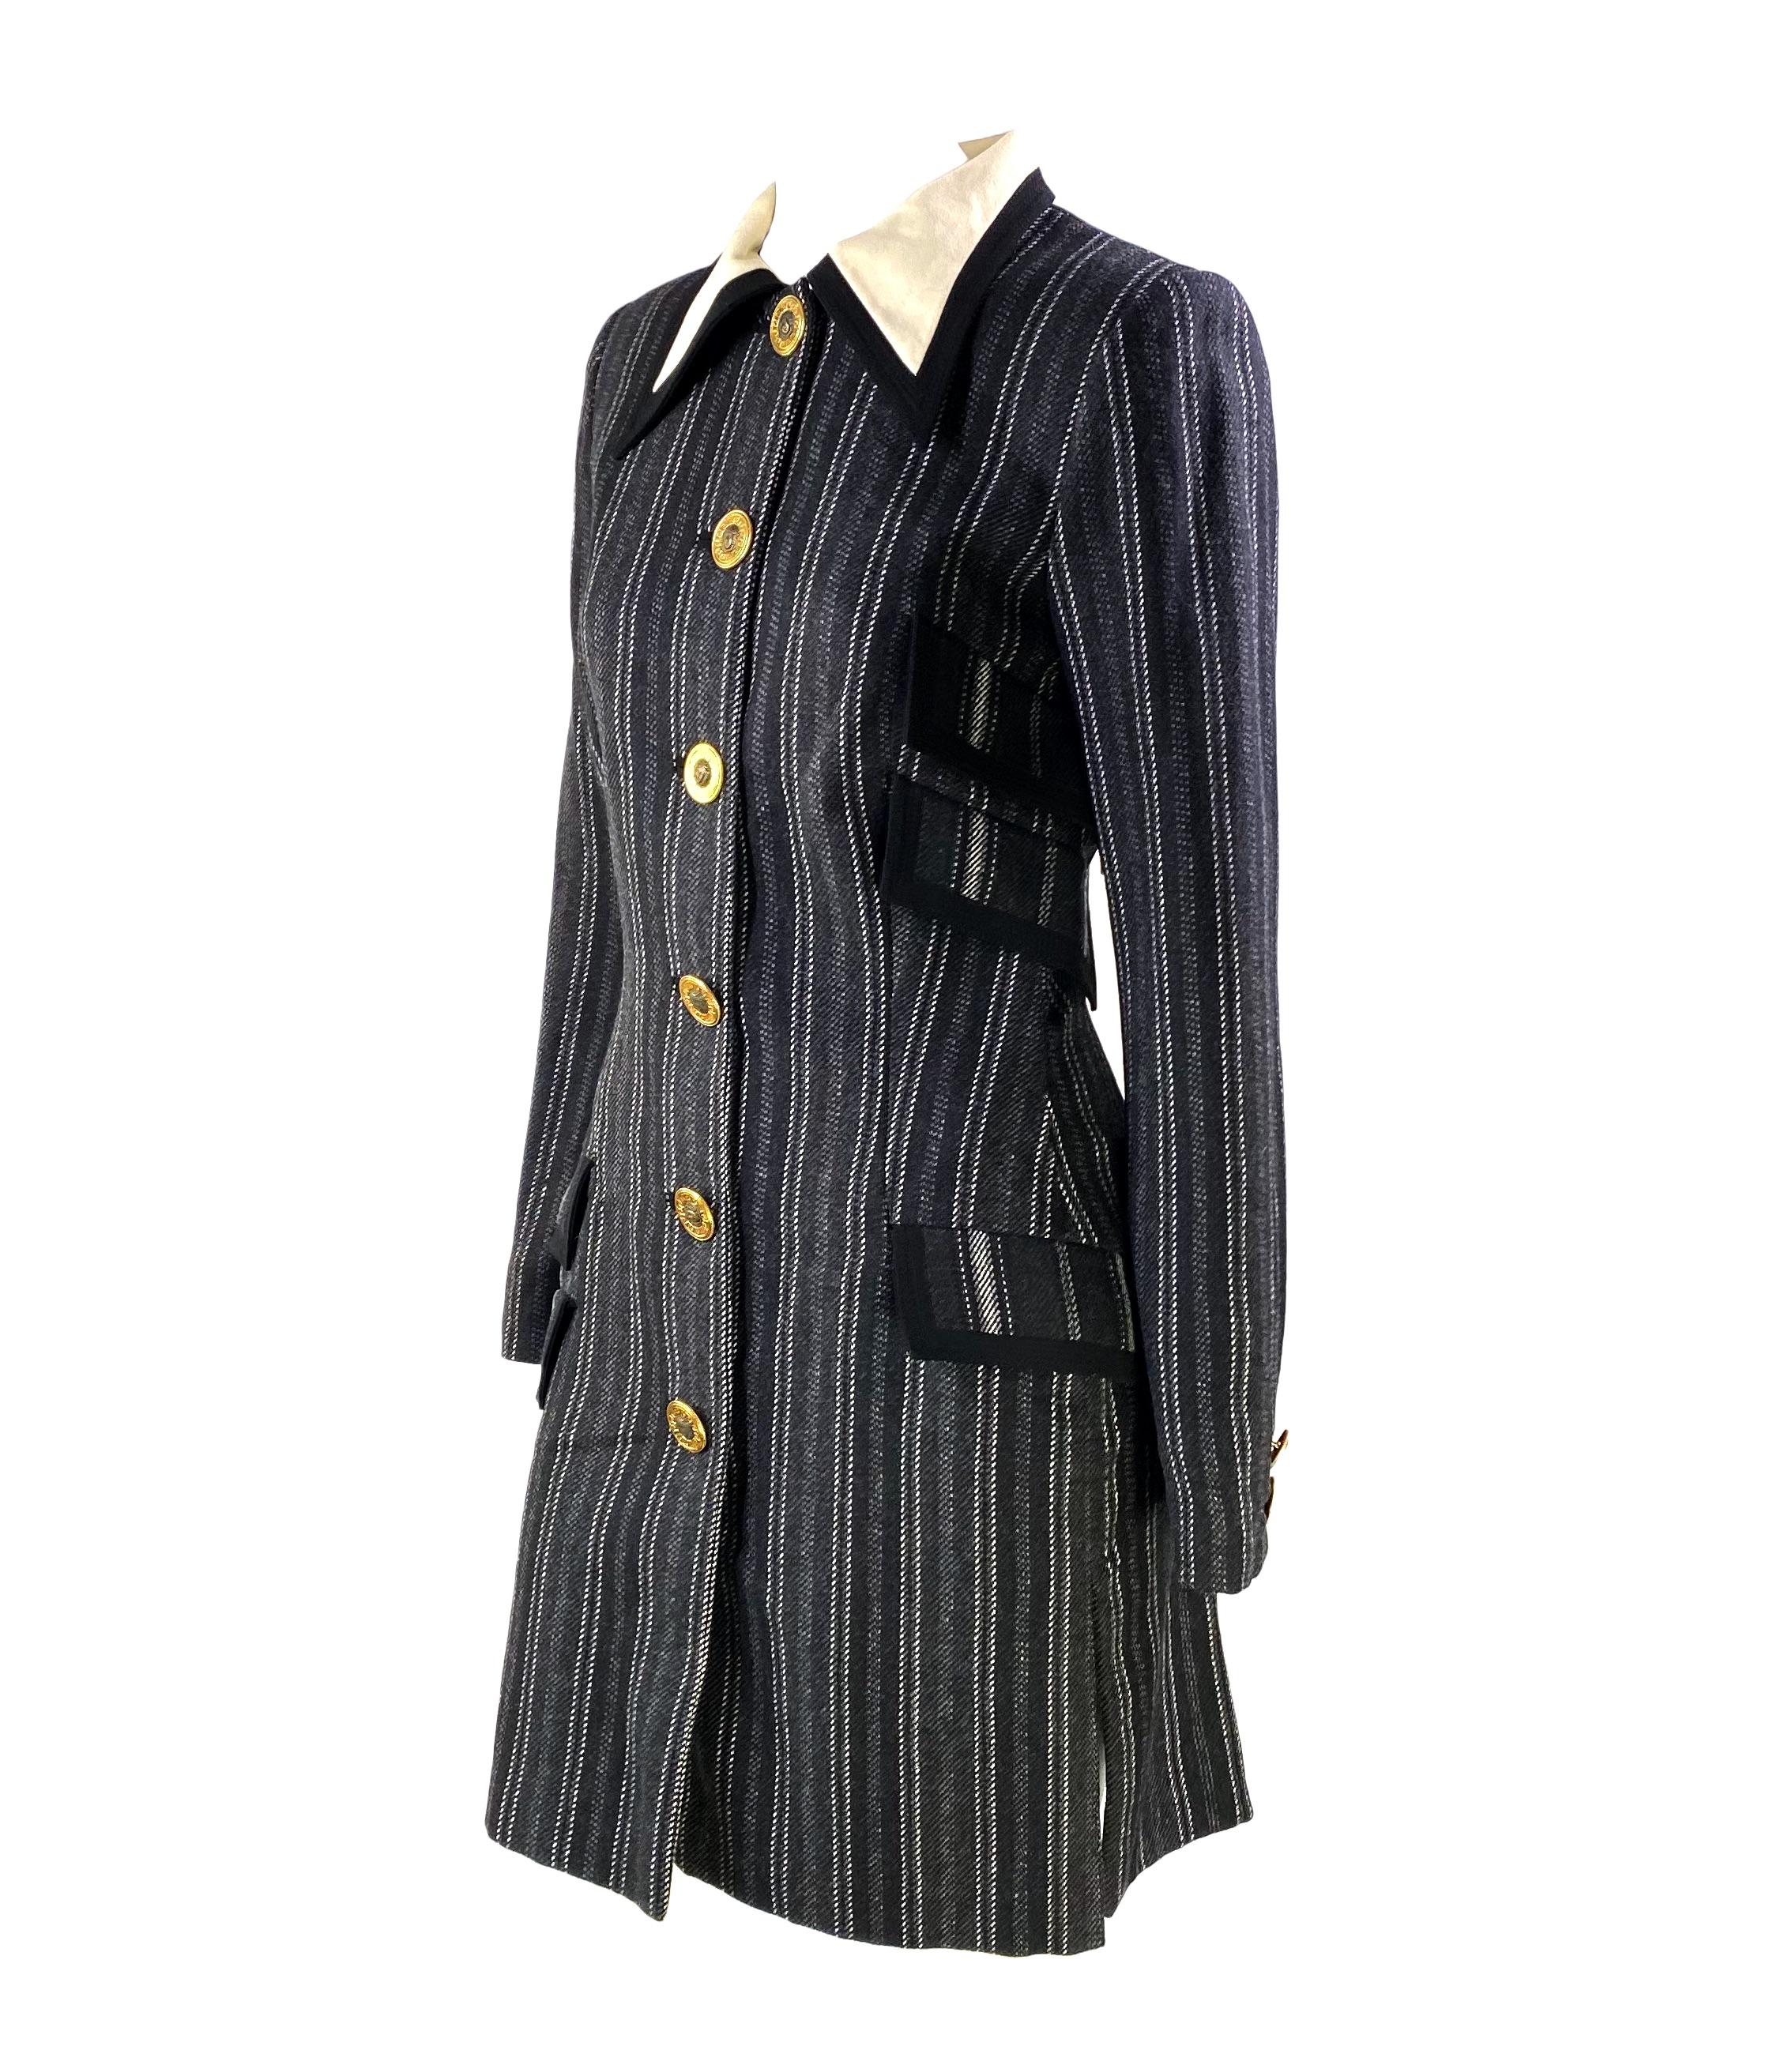 Présentation d'un manteau à collet conçu par Gianni Versace pour sa collection automne/hiver 1993. La collection est restée dans les mémoires pour son esthétique grunge-glamour. Cette pièce est ornée de boutons Medusa dorés au centre et à chaque